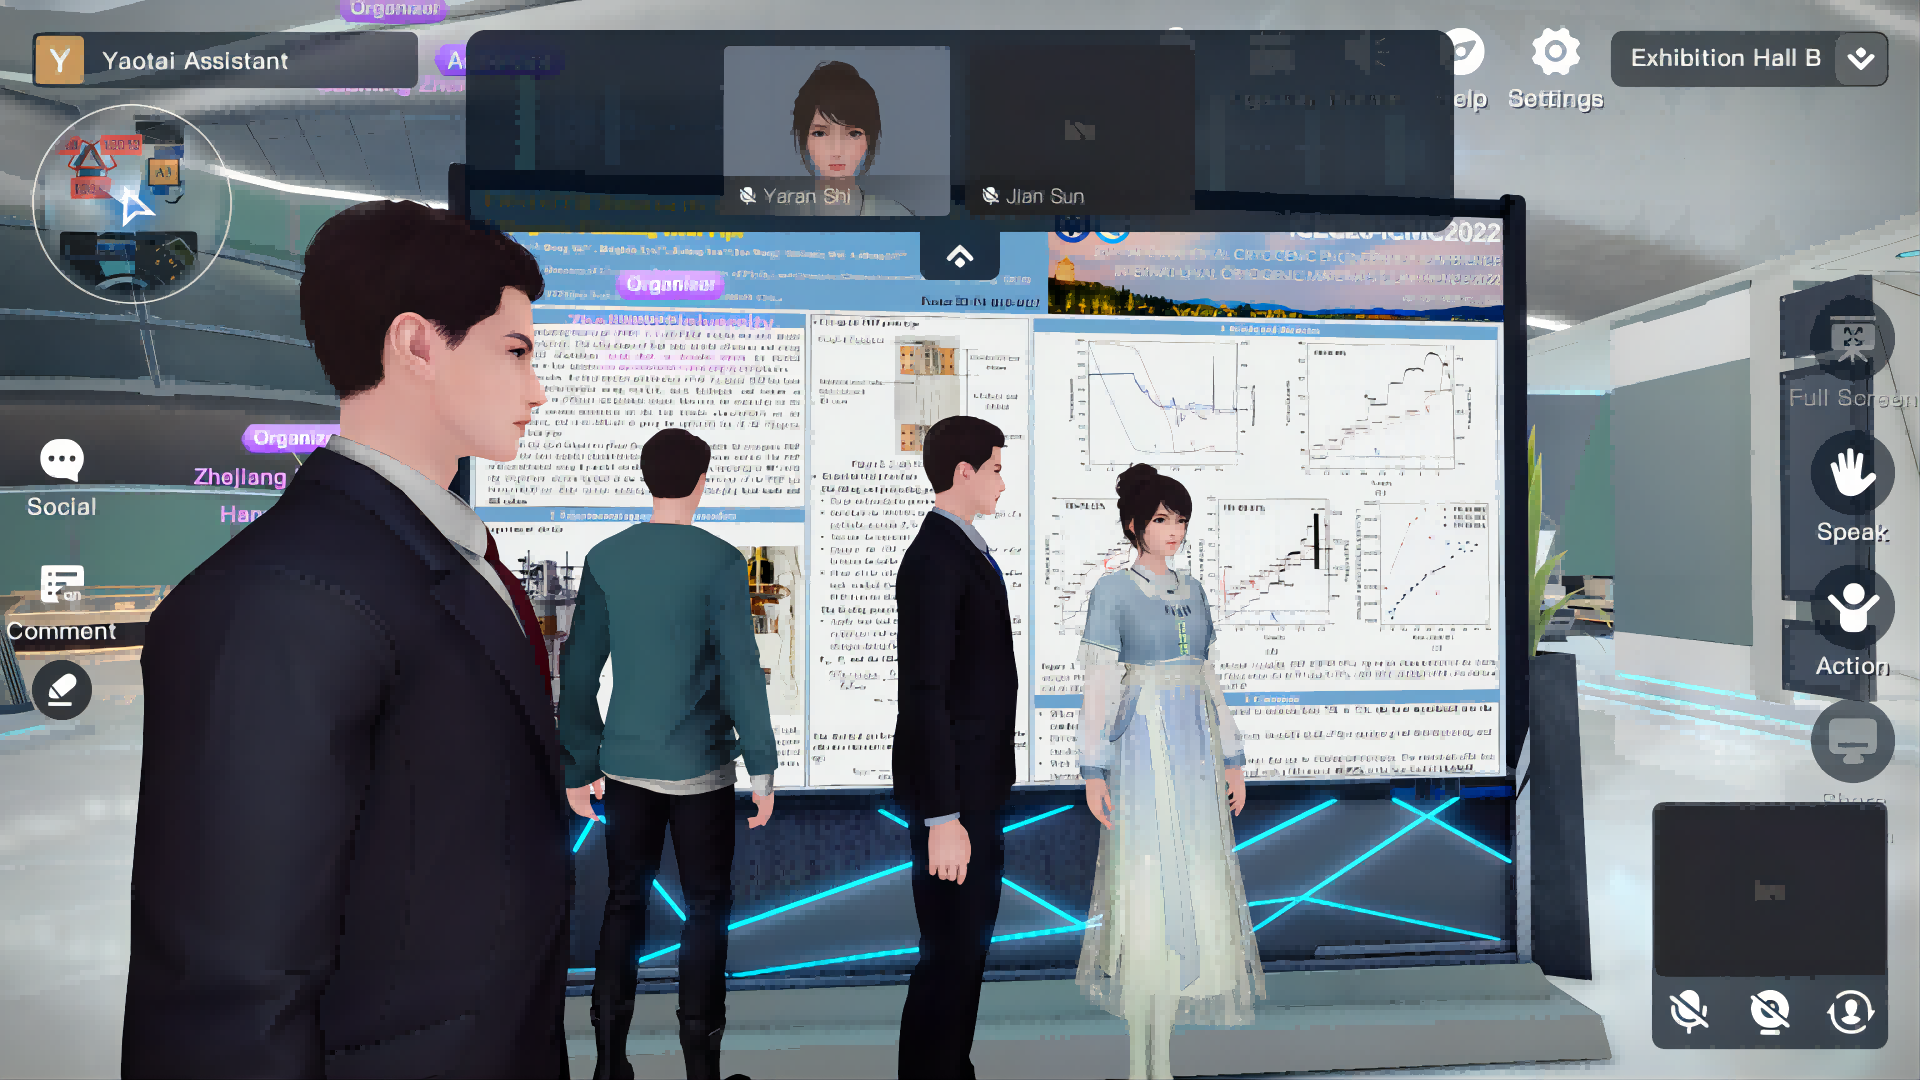 图片展示了几个三维虚拟人物在一个高科技展览厅内，他们正围绕着一个带有图表和数据的大屏幕交流。